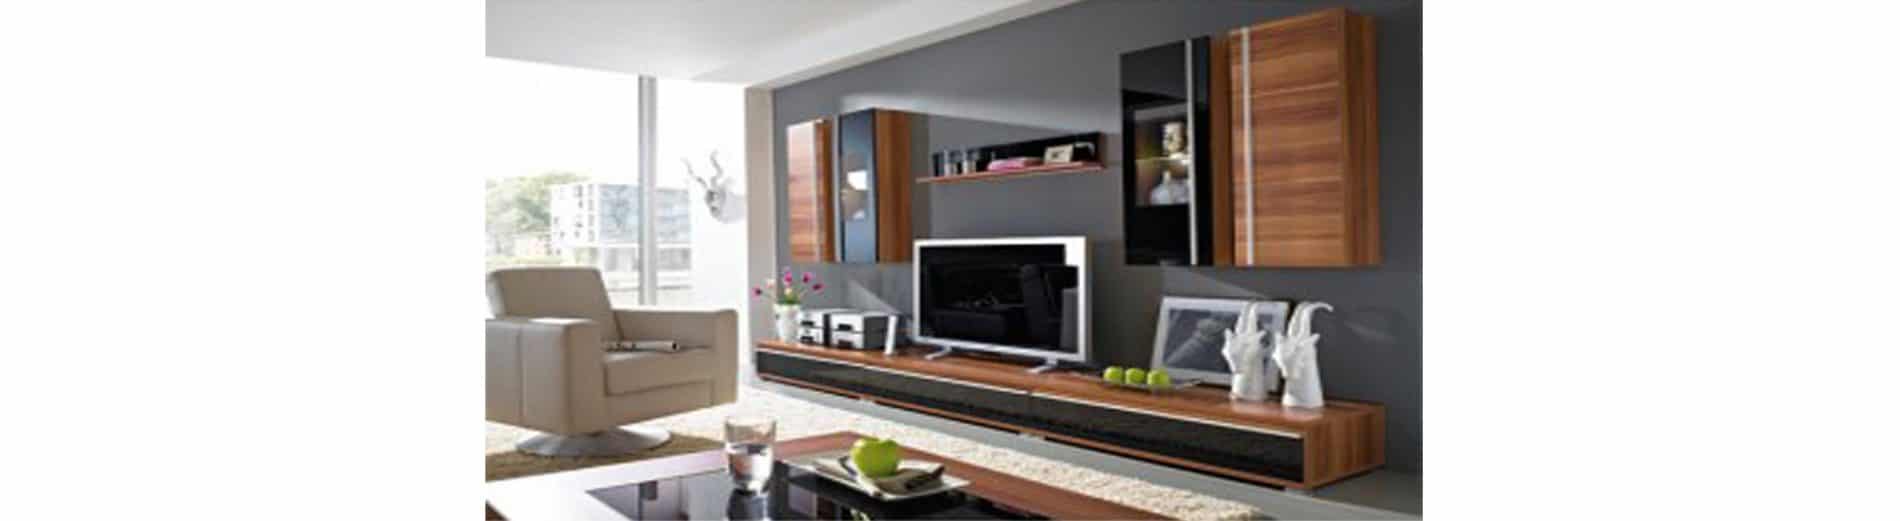 Best living room arrangement for living room furniture with good back support furniture